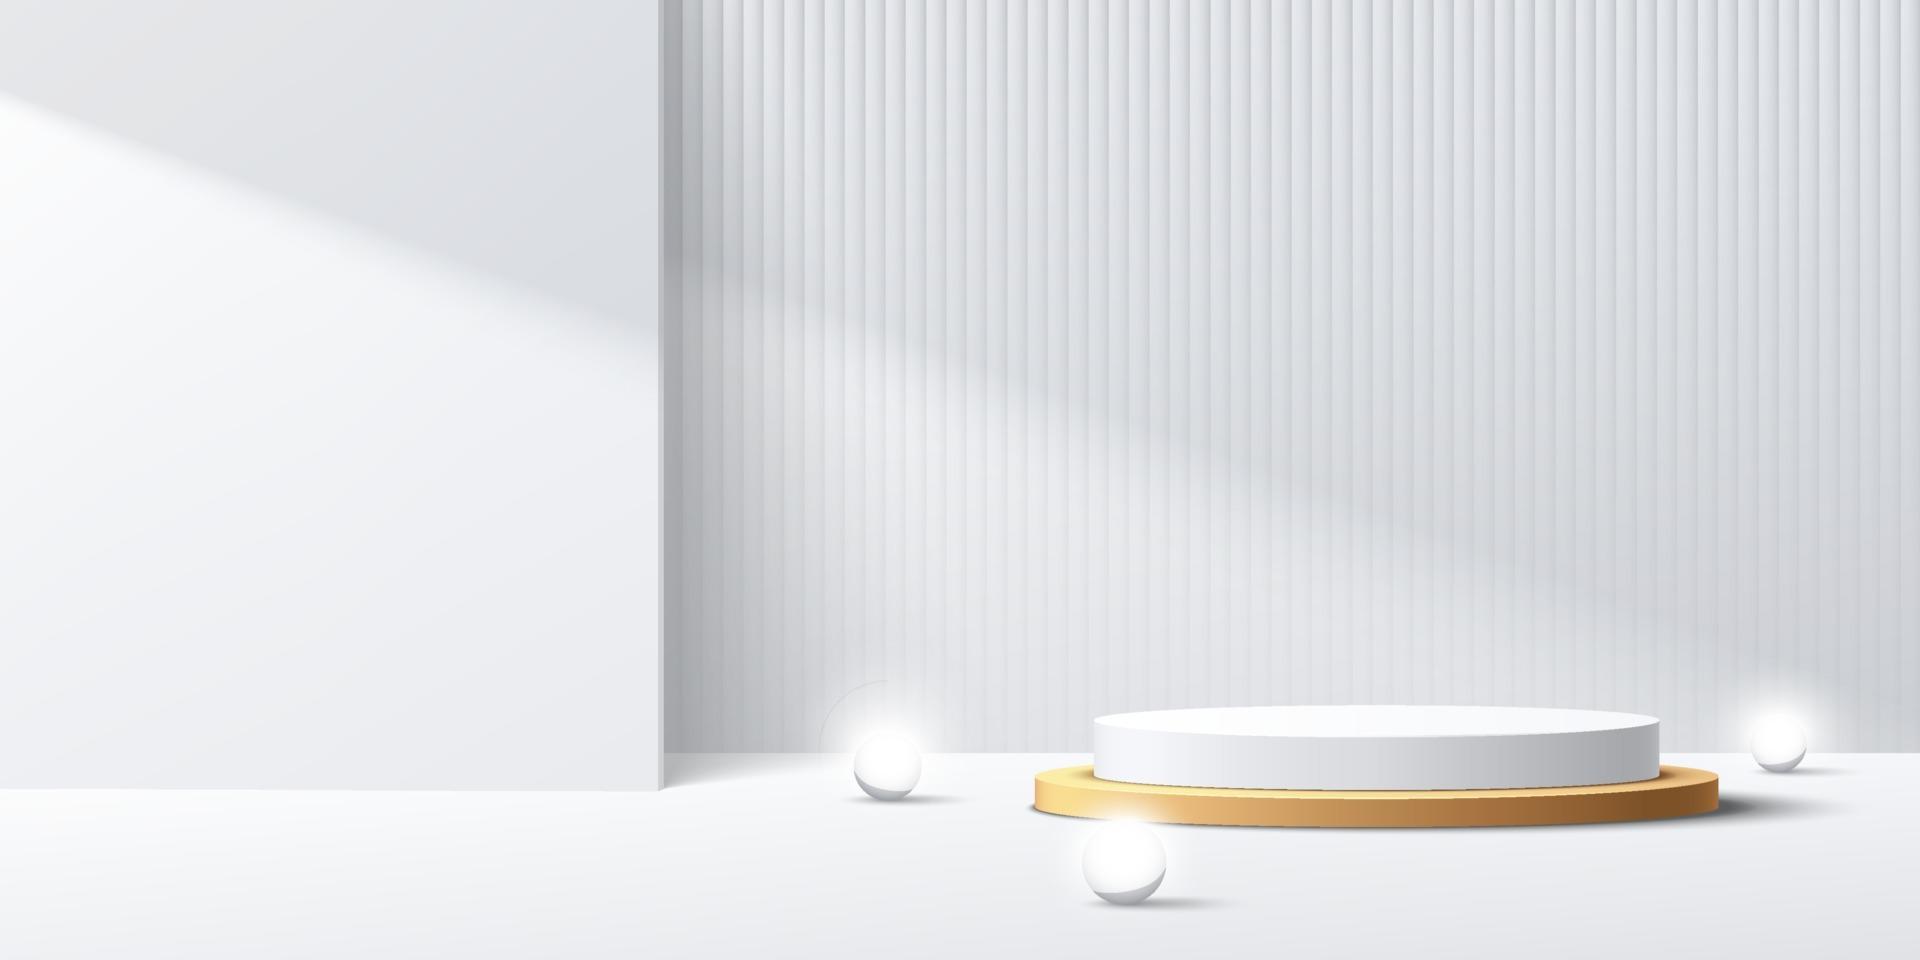 moderno piedistallo cilindrico bianco e oro con sfera a sfera al neon. scena minimale bianca astratta. sfondo trama strisce verticali in ombra. rendering vettoriale Presentazione del display del prodotto in forma 3D.